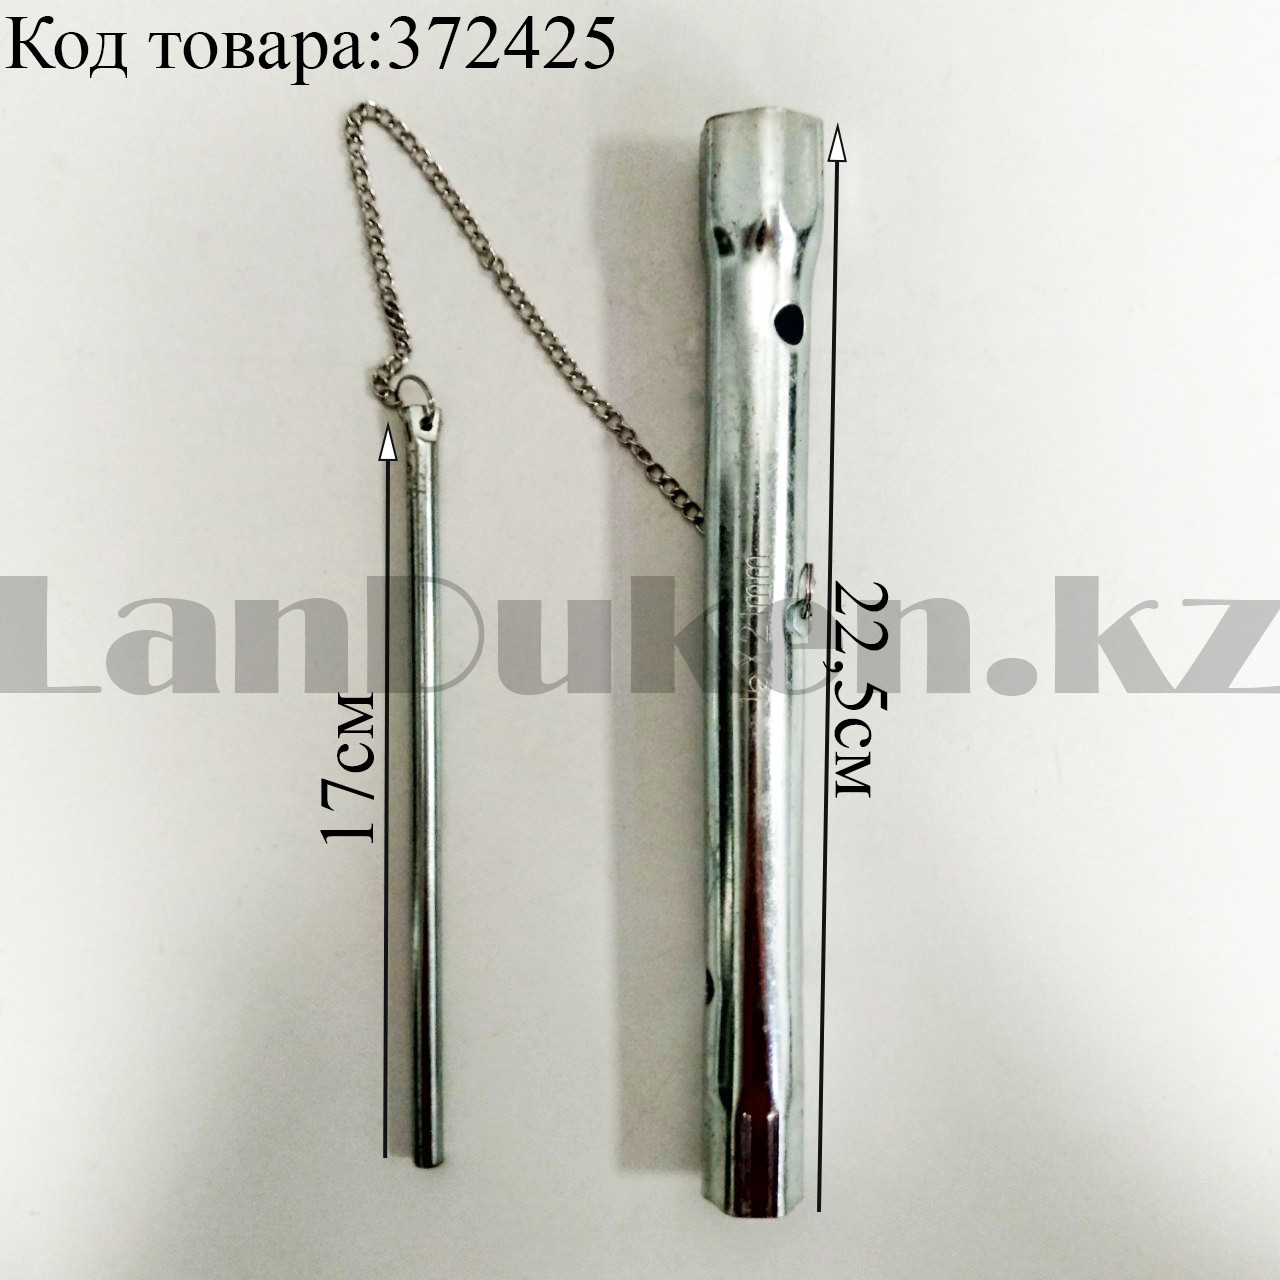 Свечной ключ трубка на 16мм и 21мм с цепочкой, фото 1